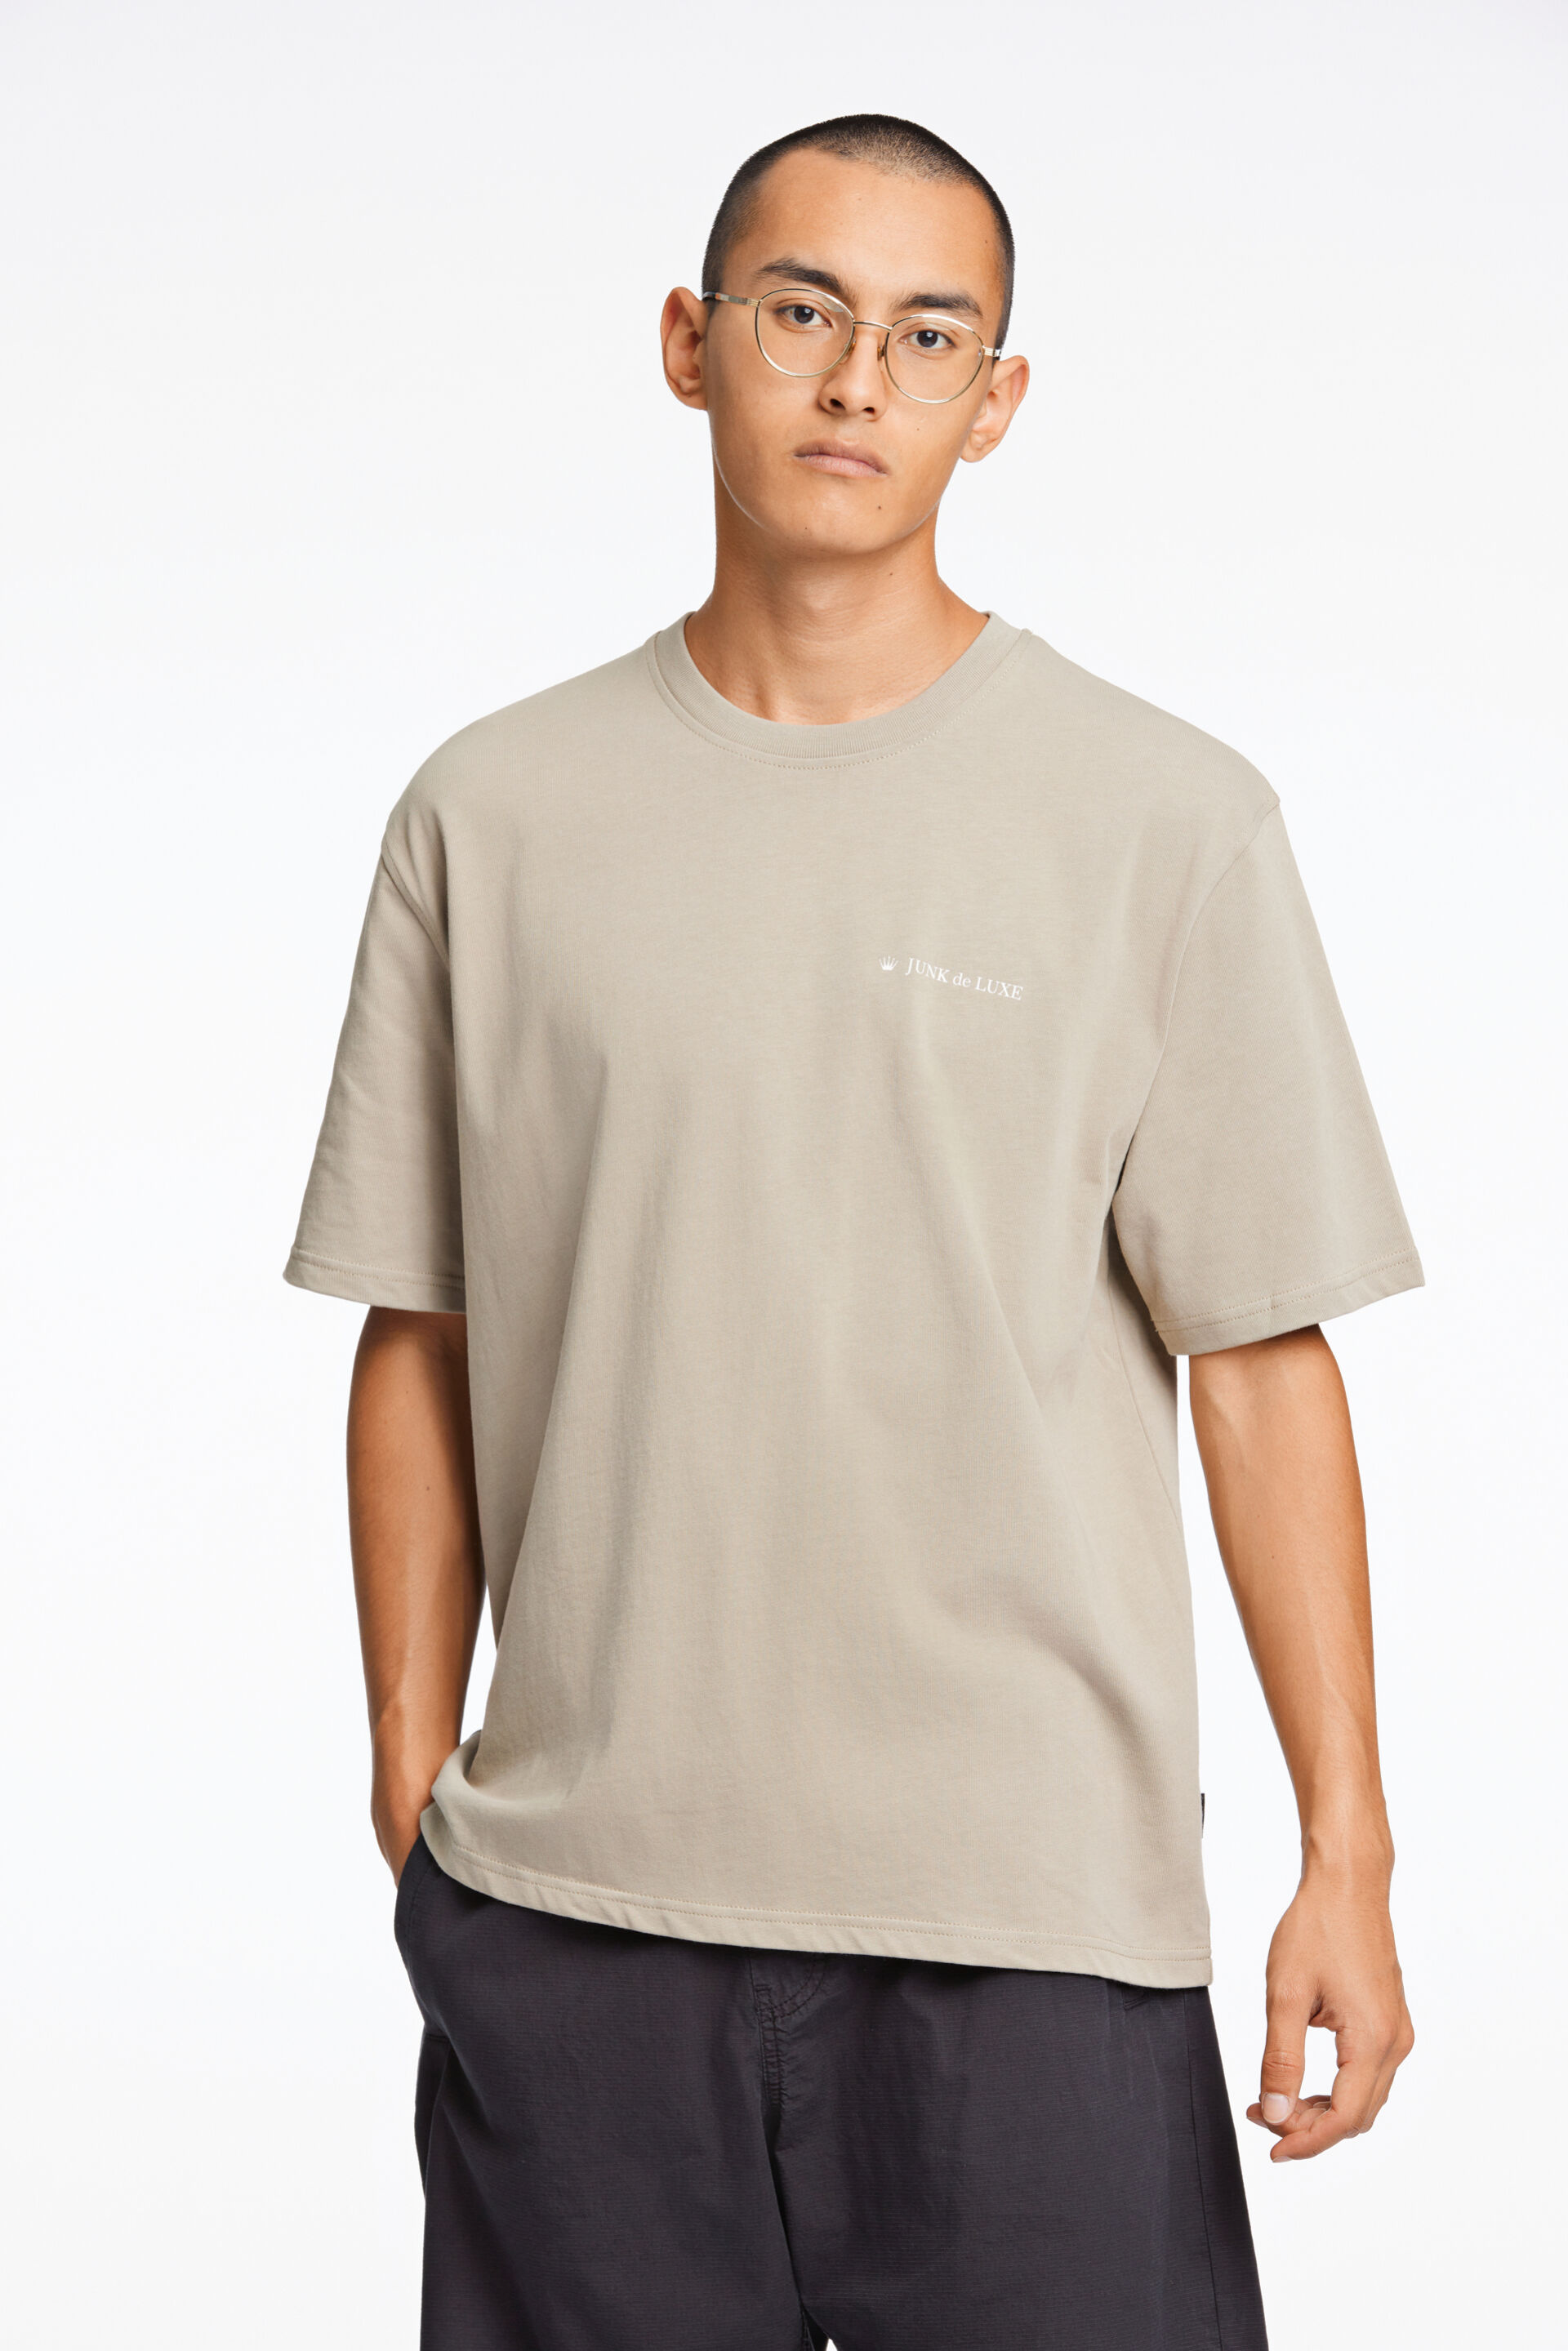 Junk de Luxe  T-shirt Grå 60-455019